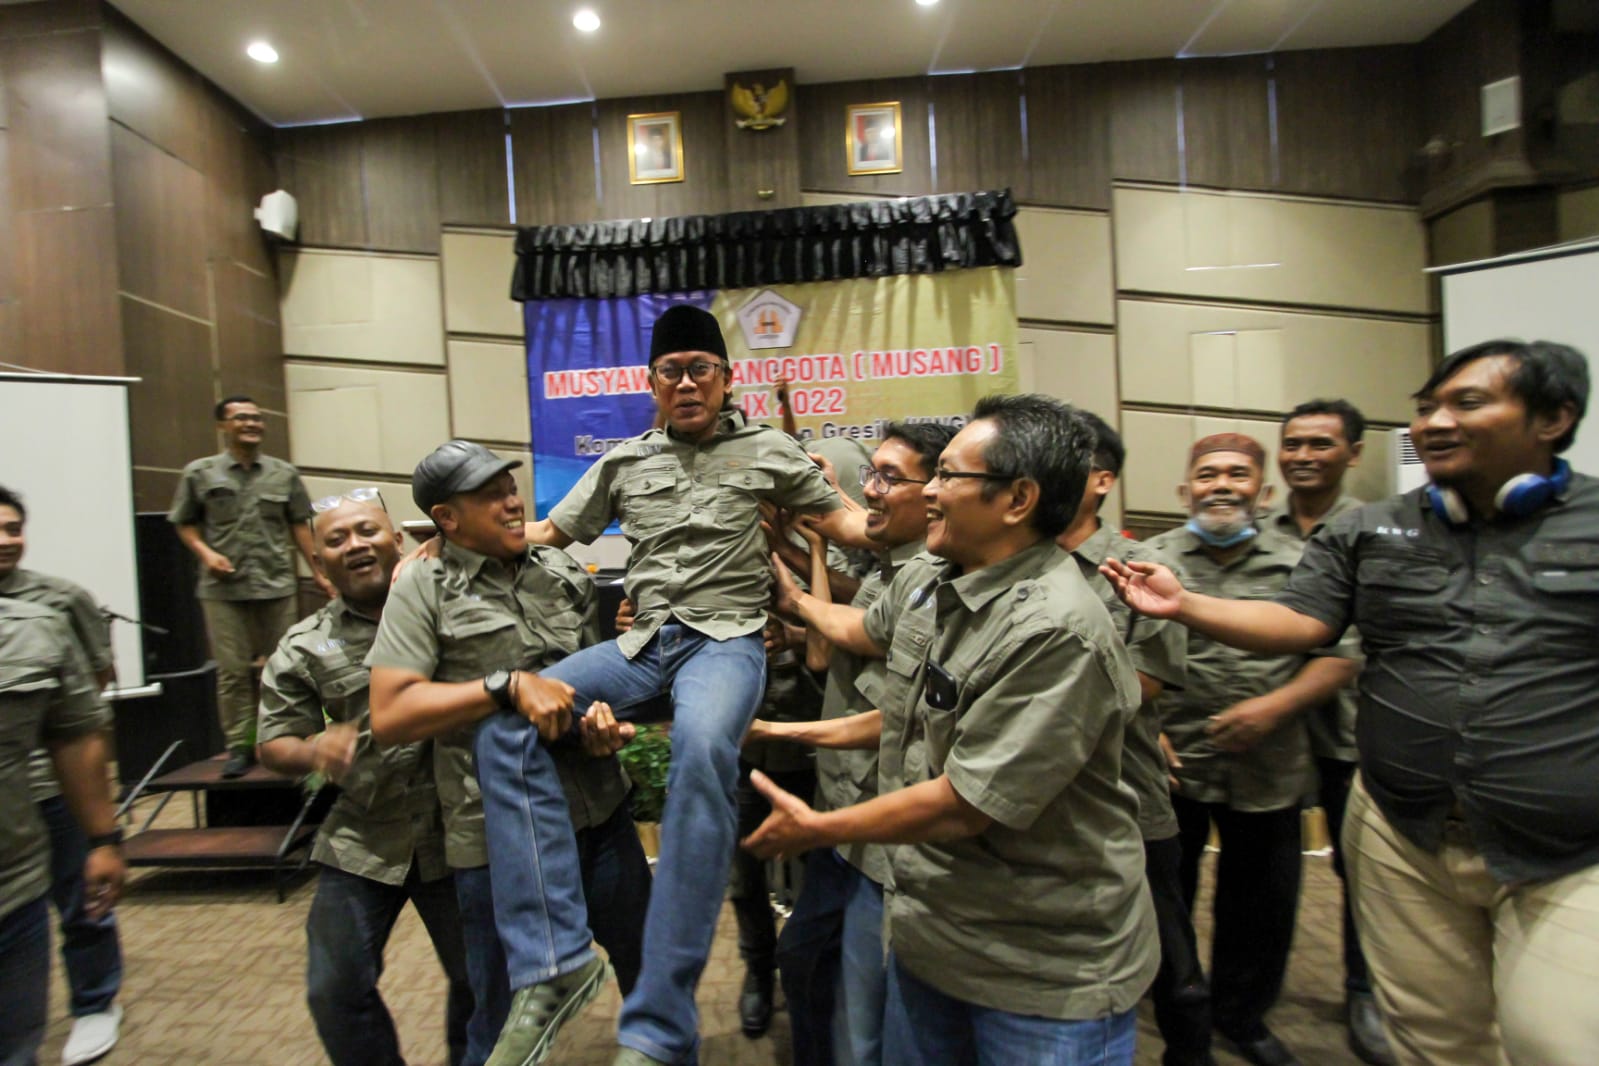 Musang Komunitas Wartawan Gresik ke IX, Miftahul Arif Terpilih Jadi Ketua